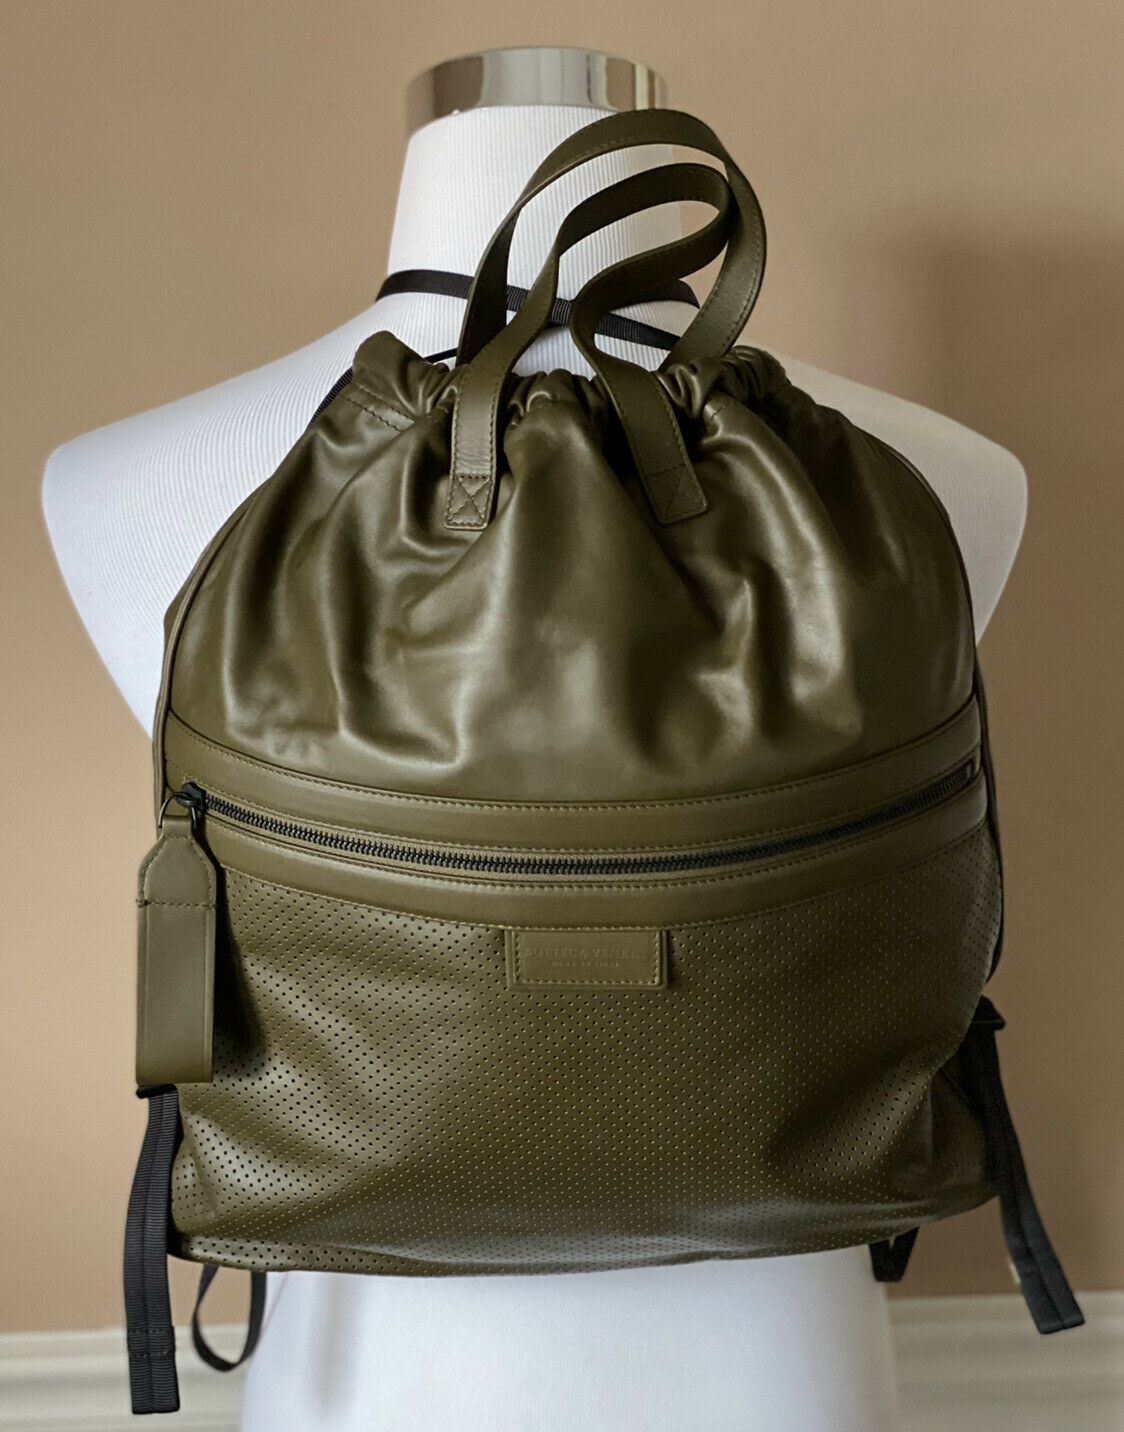 NWT $1980 Bottega Veneta Leather Backpack Green Made in Italy 567222